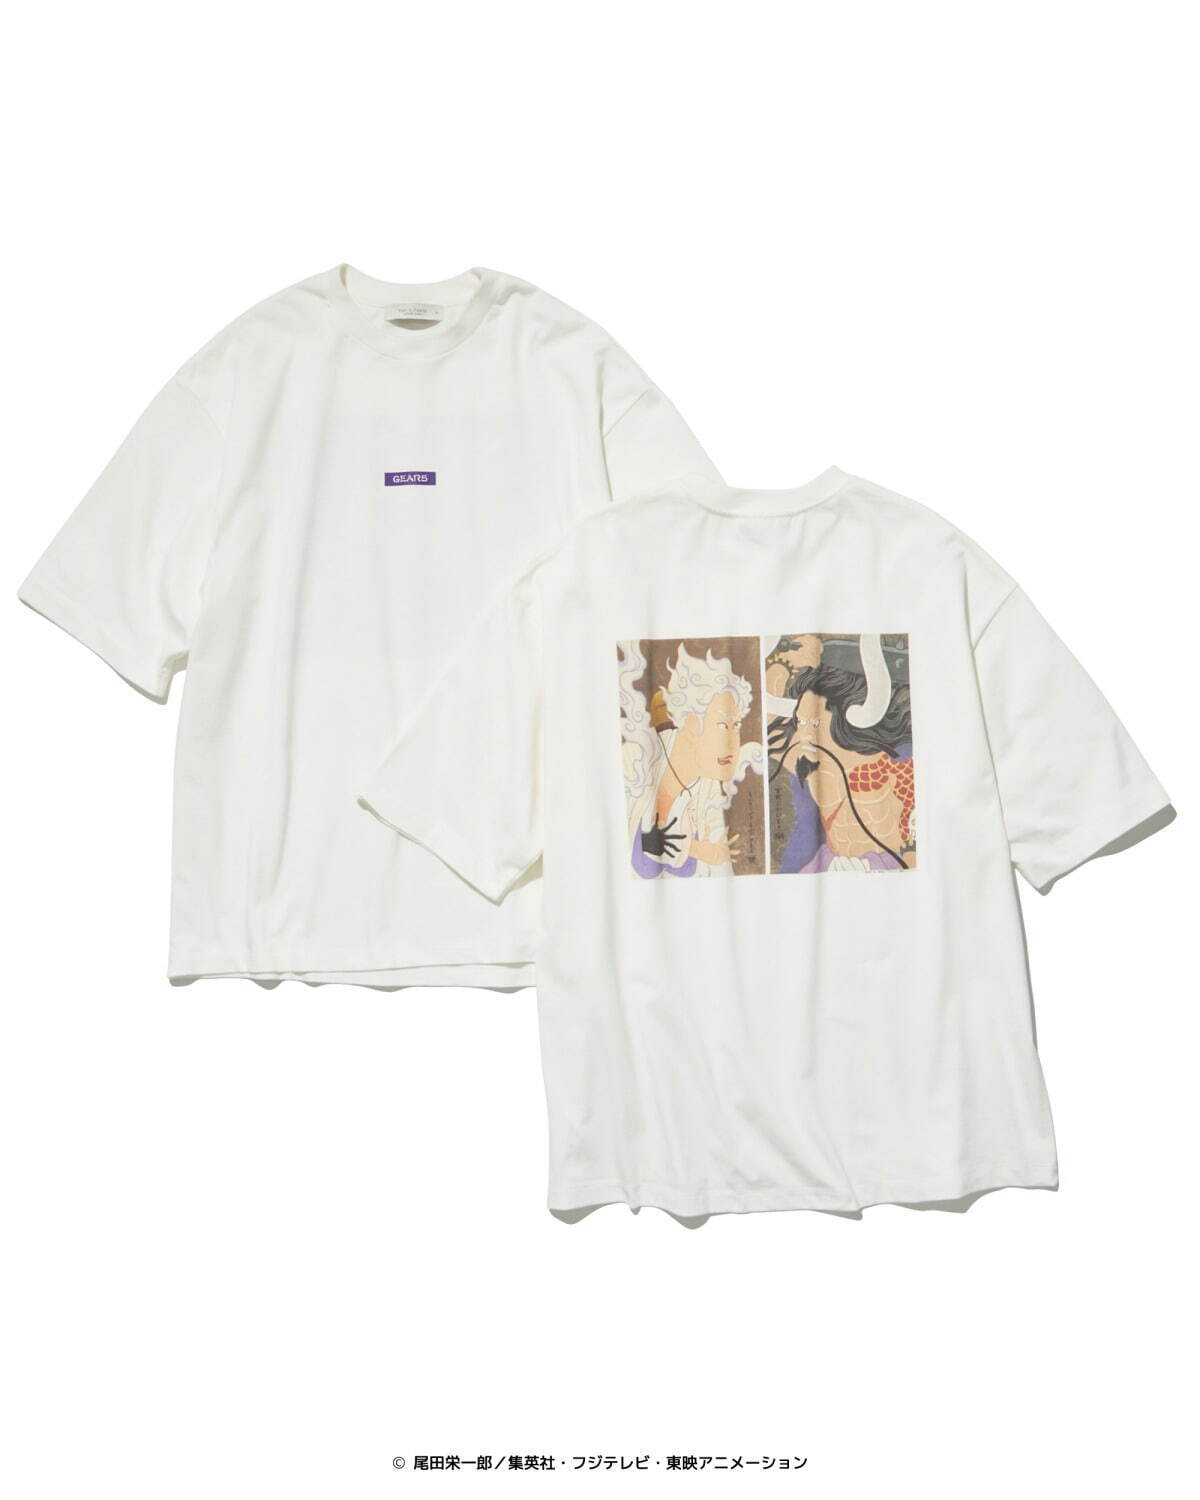 11,025円ONE PIECE(ワンピース)コラボTシャツ　GEAR5(ギアフィフス)ルフィ